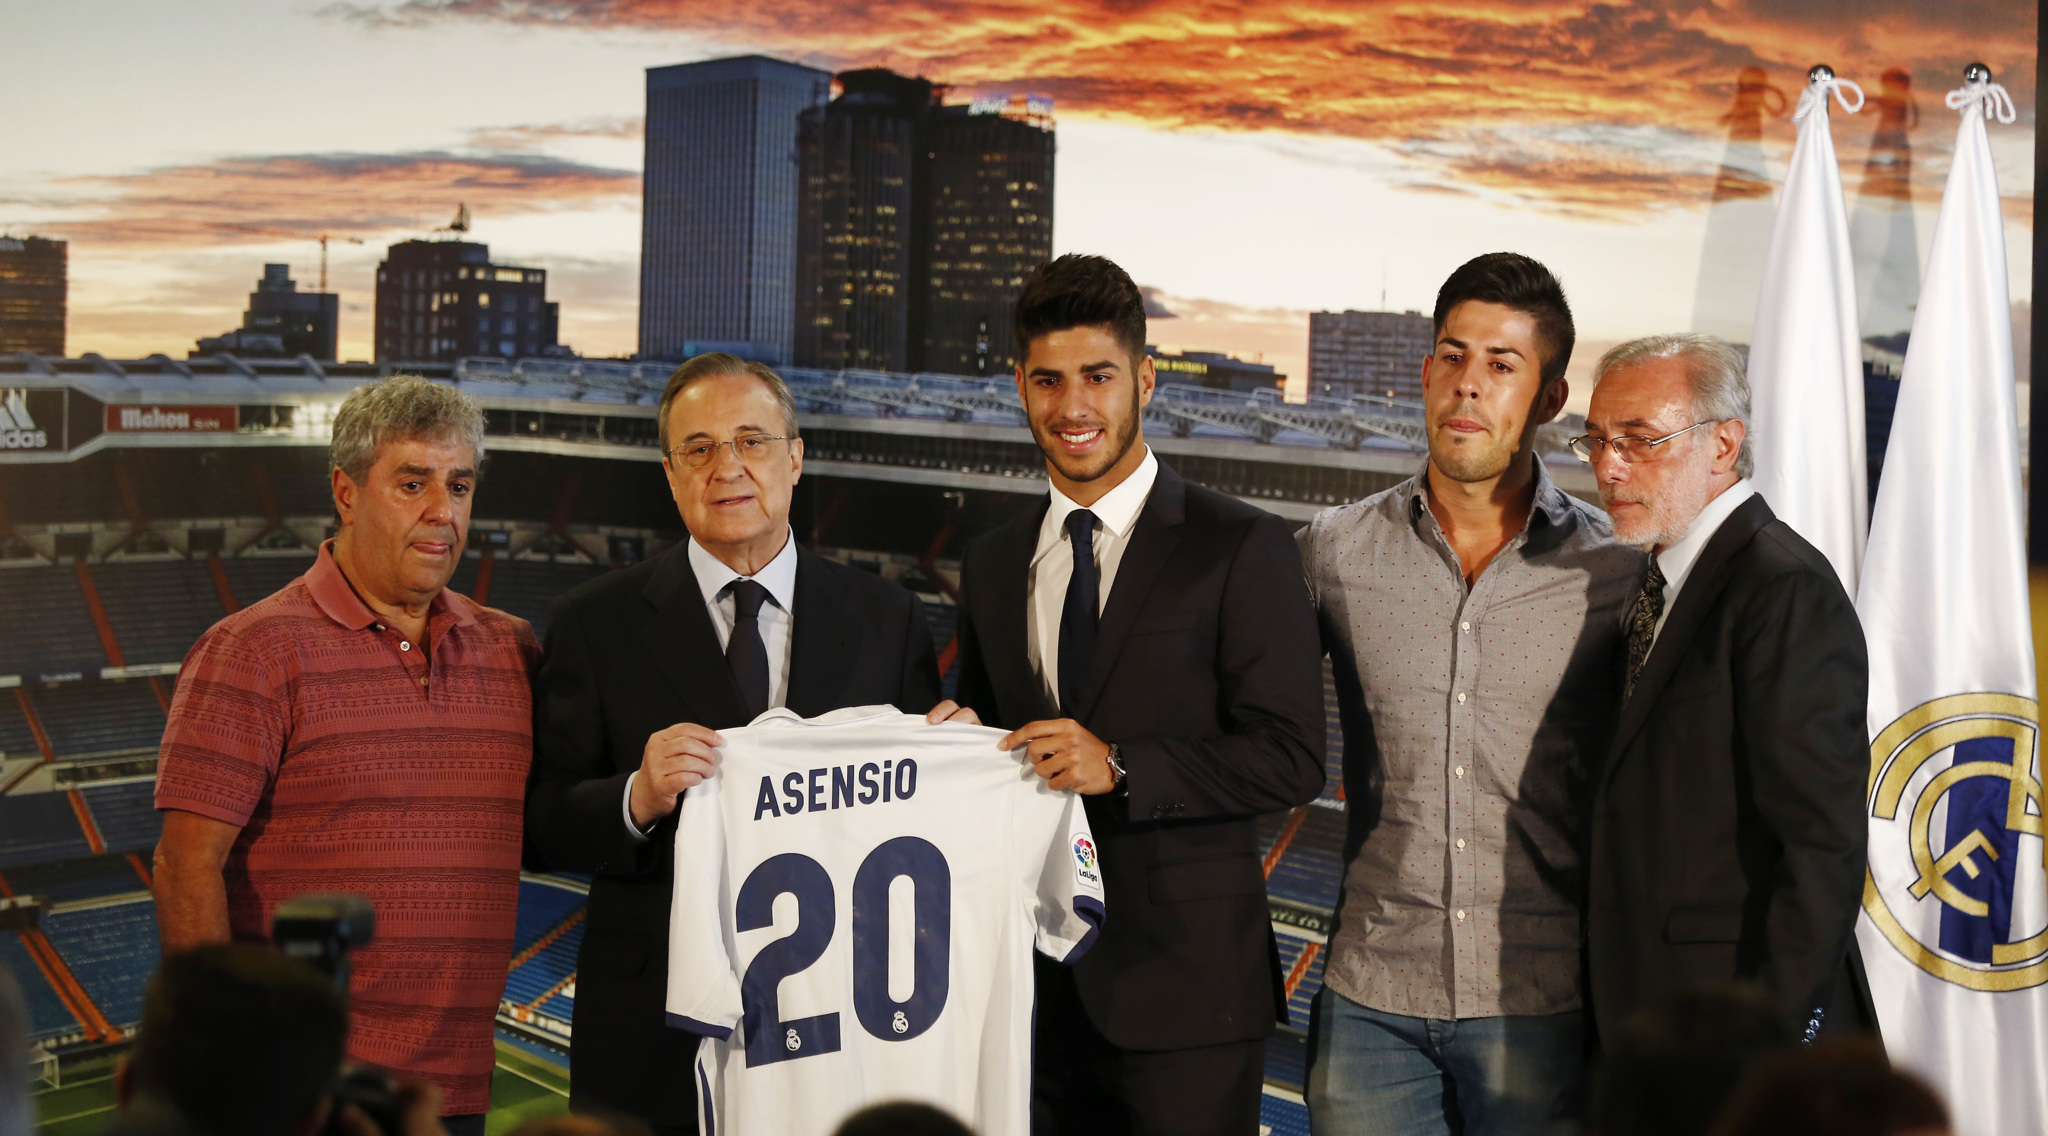 Presentacin de Asensio como jugador del Madrid